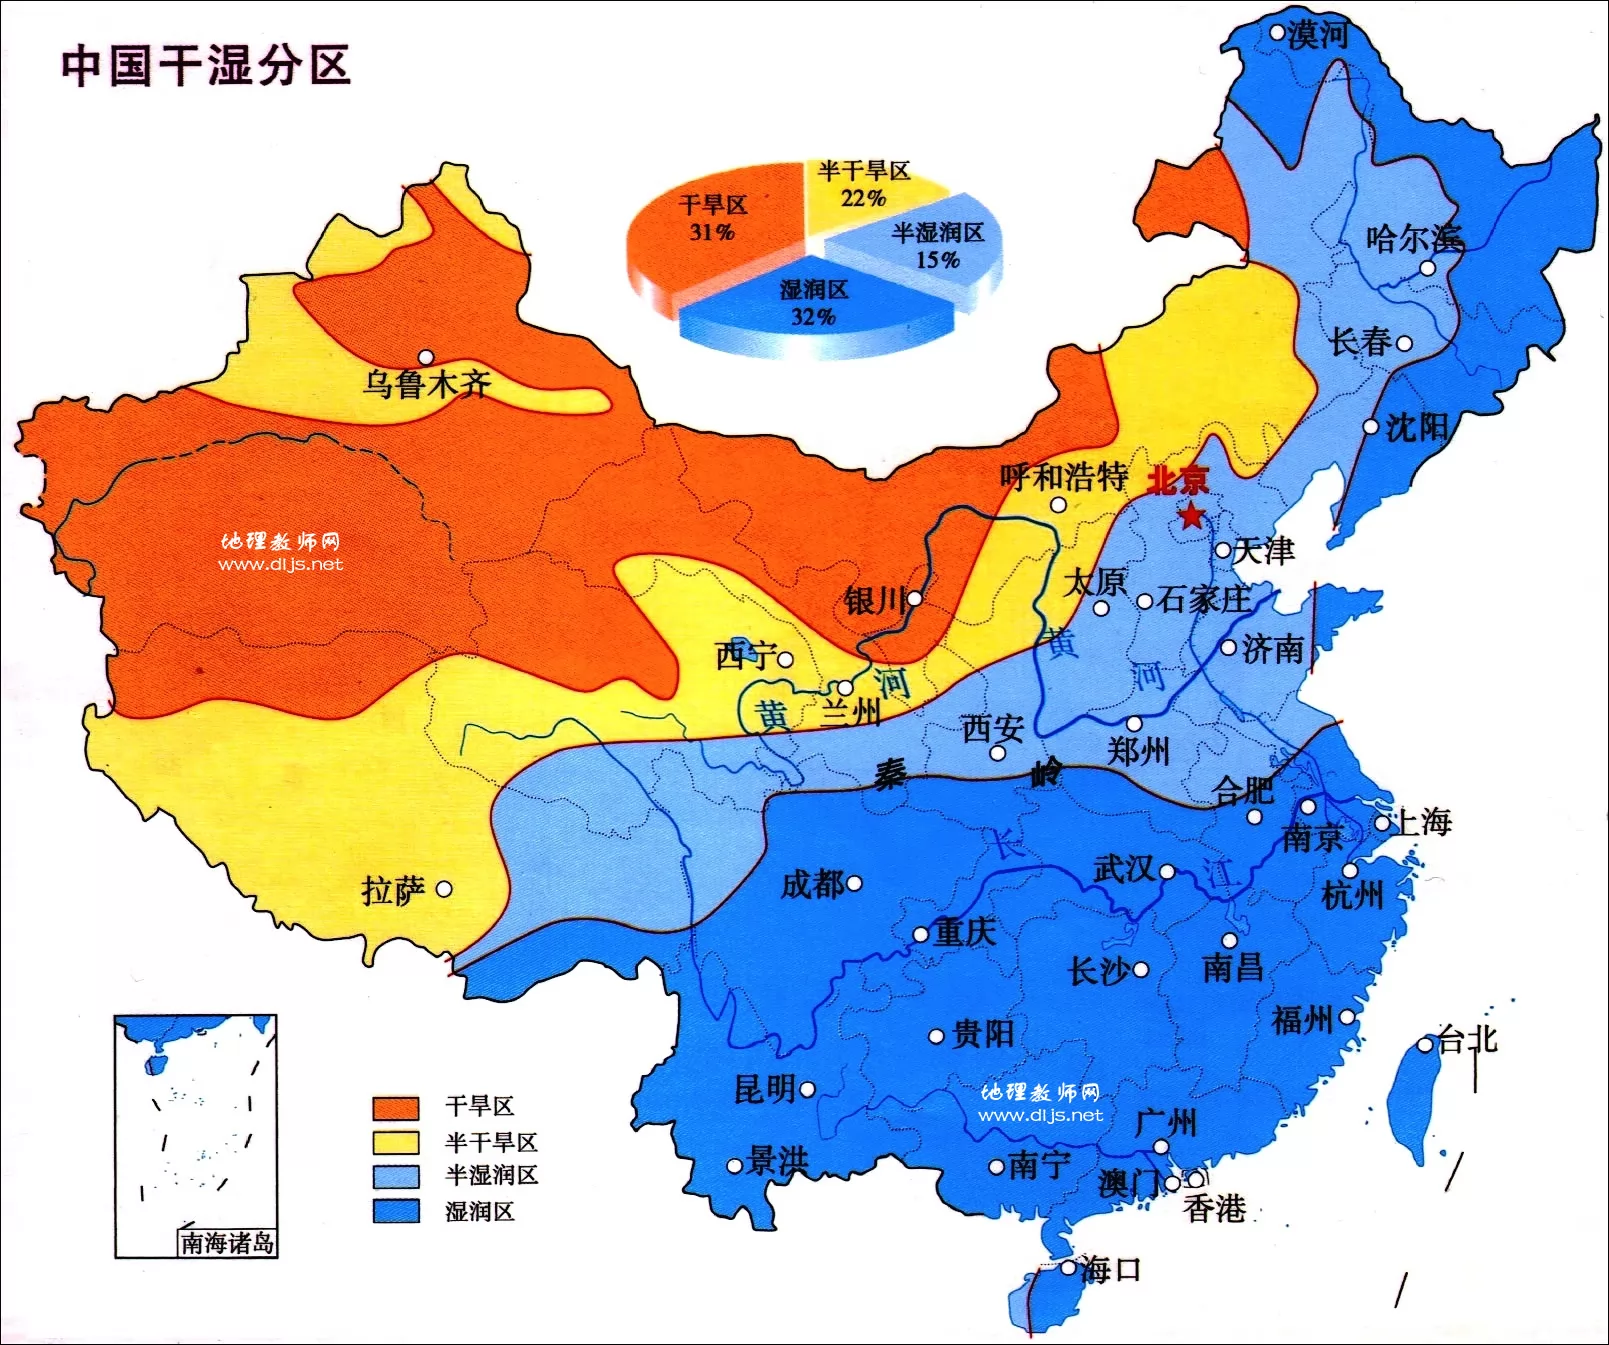 中国干湿分区示意图